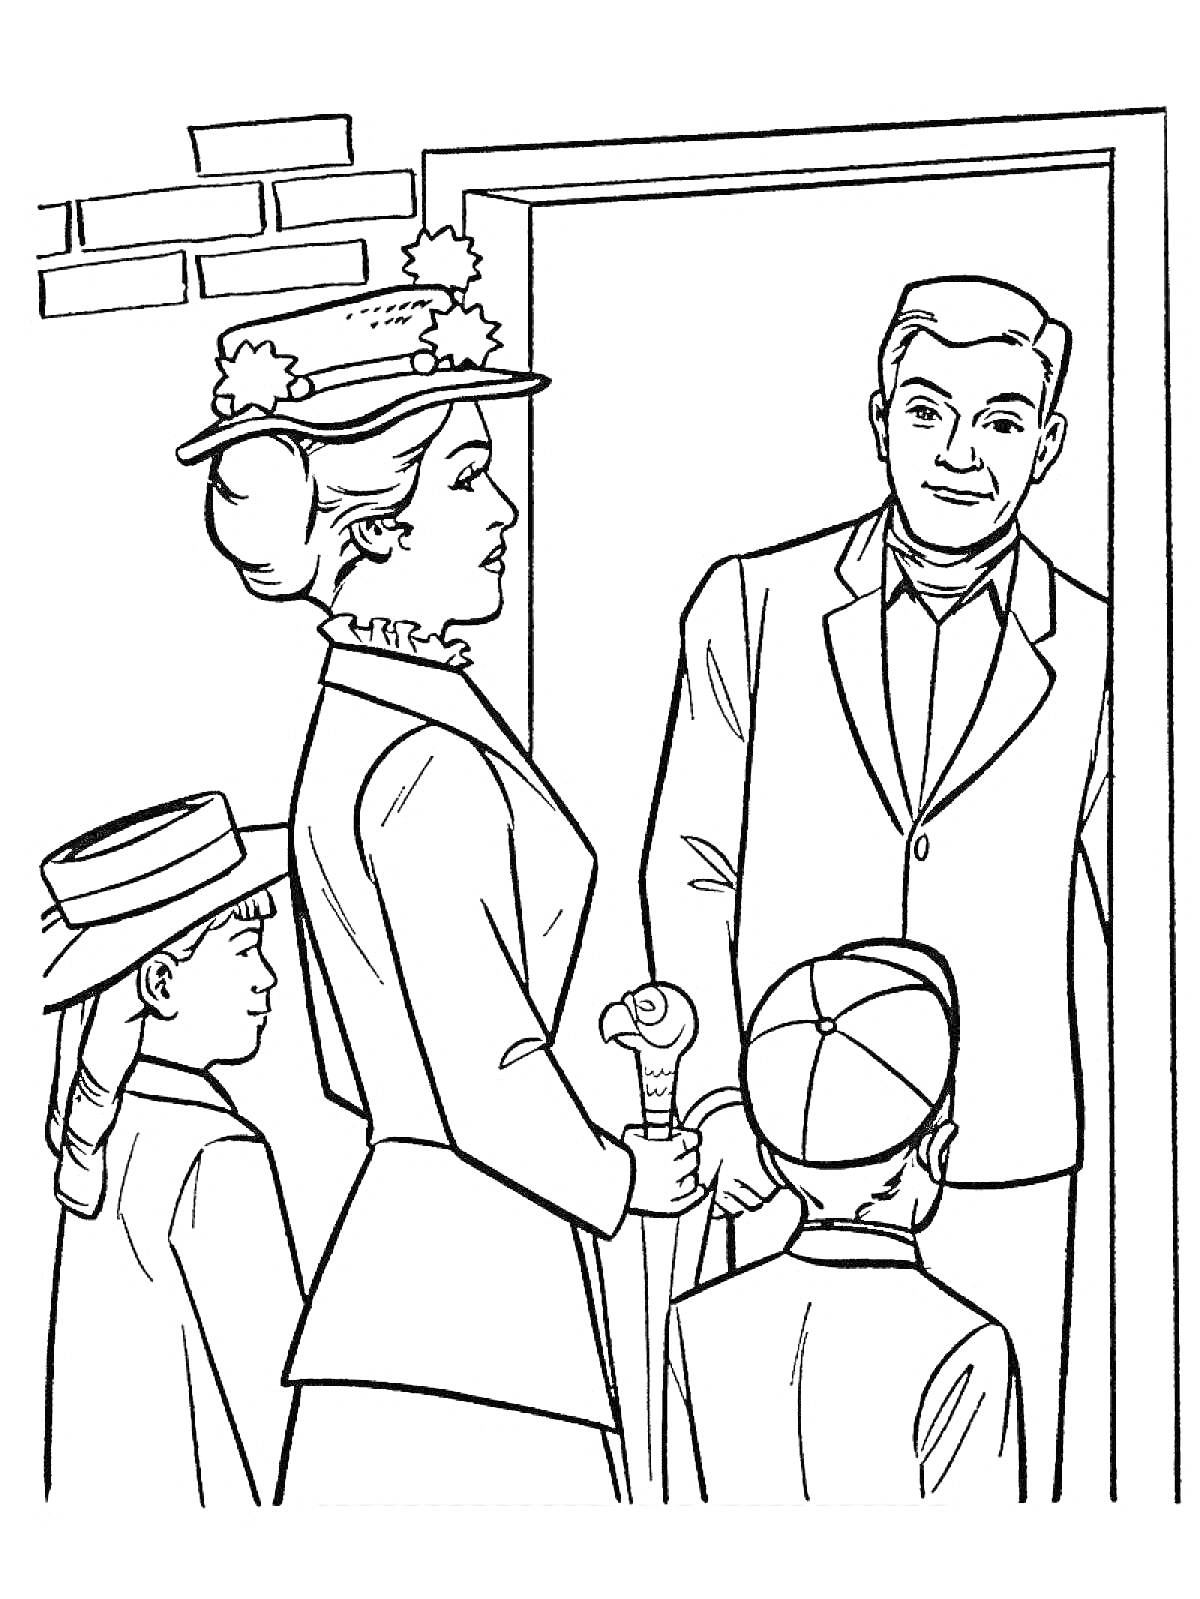 Мэри Поппинс с зонтиком встречает взрослого мужчину у двери, рядом стоят два ребёнка